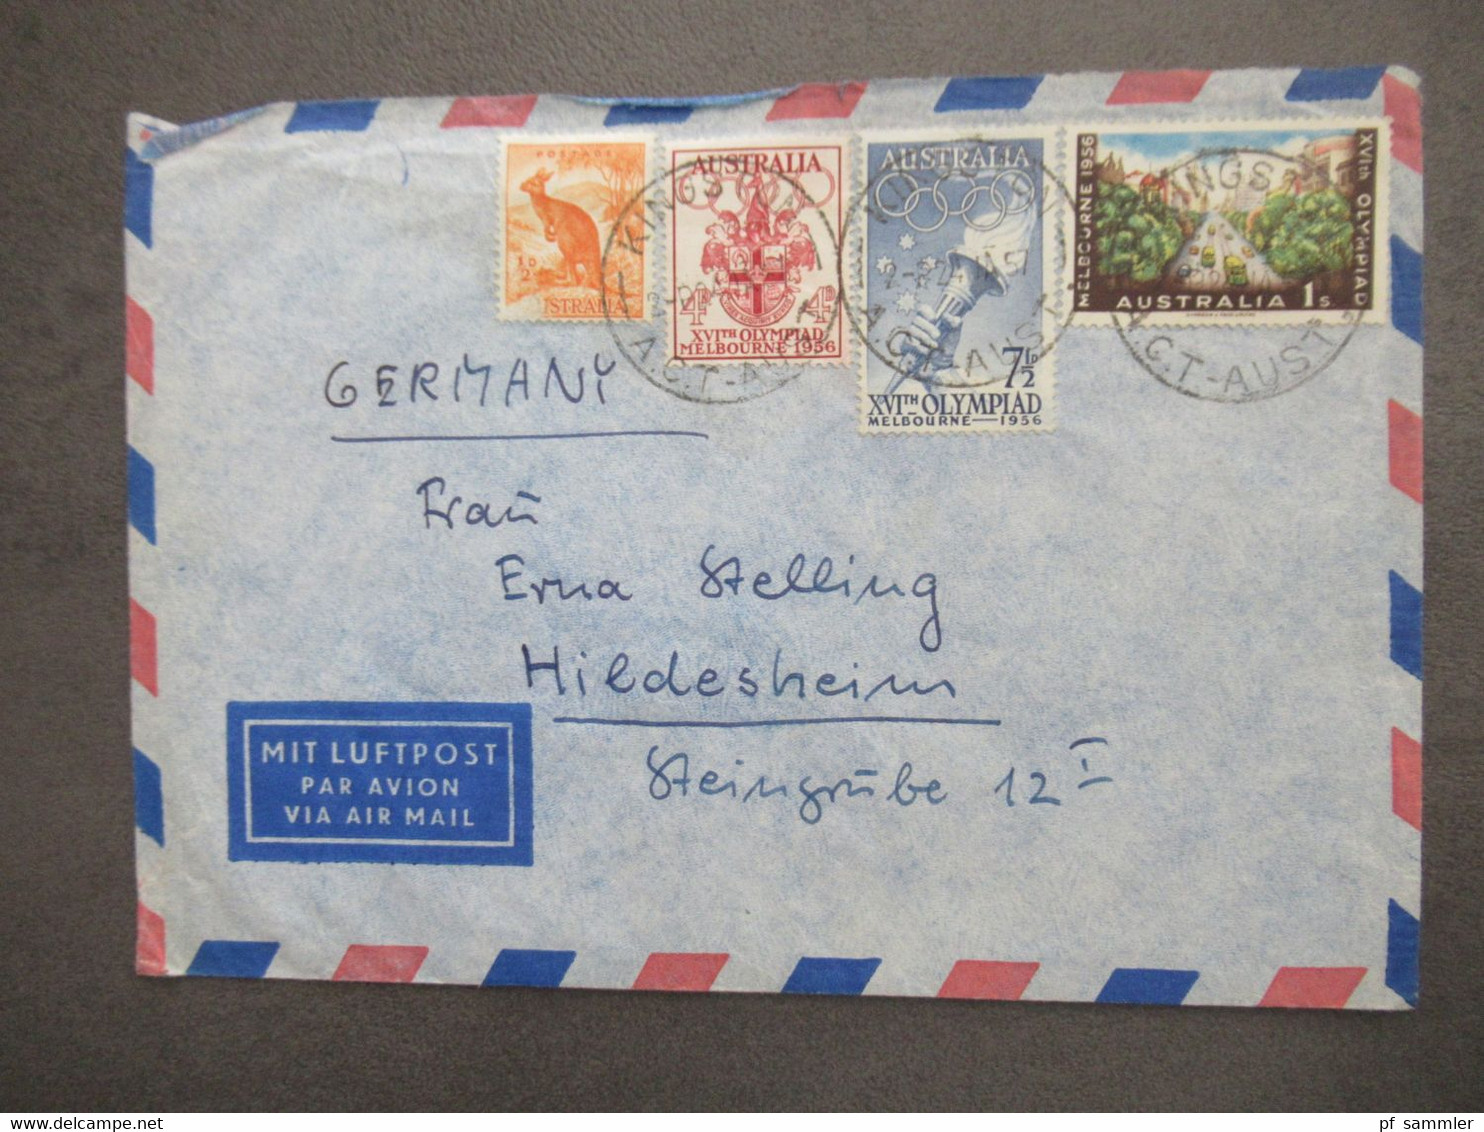 Australien Marken Von 1956 Mit Luftpost Air Mail Kingston - Hildesheim Aulandsbrief - Brieven En Documenten